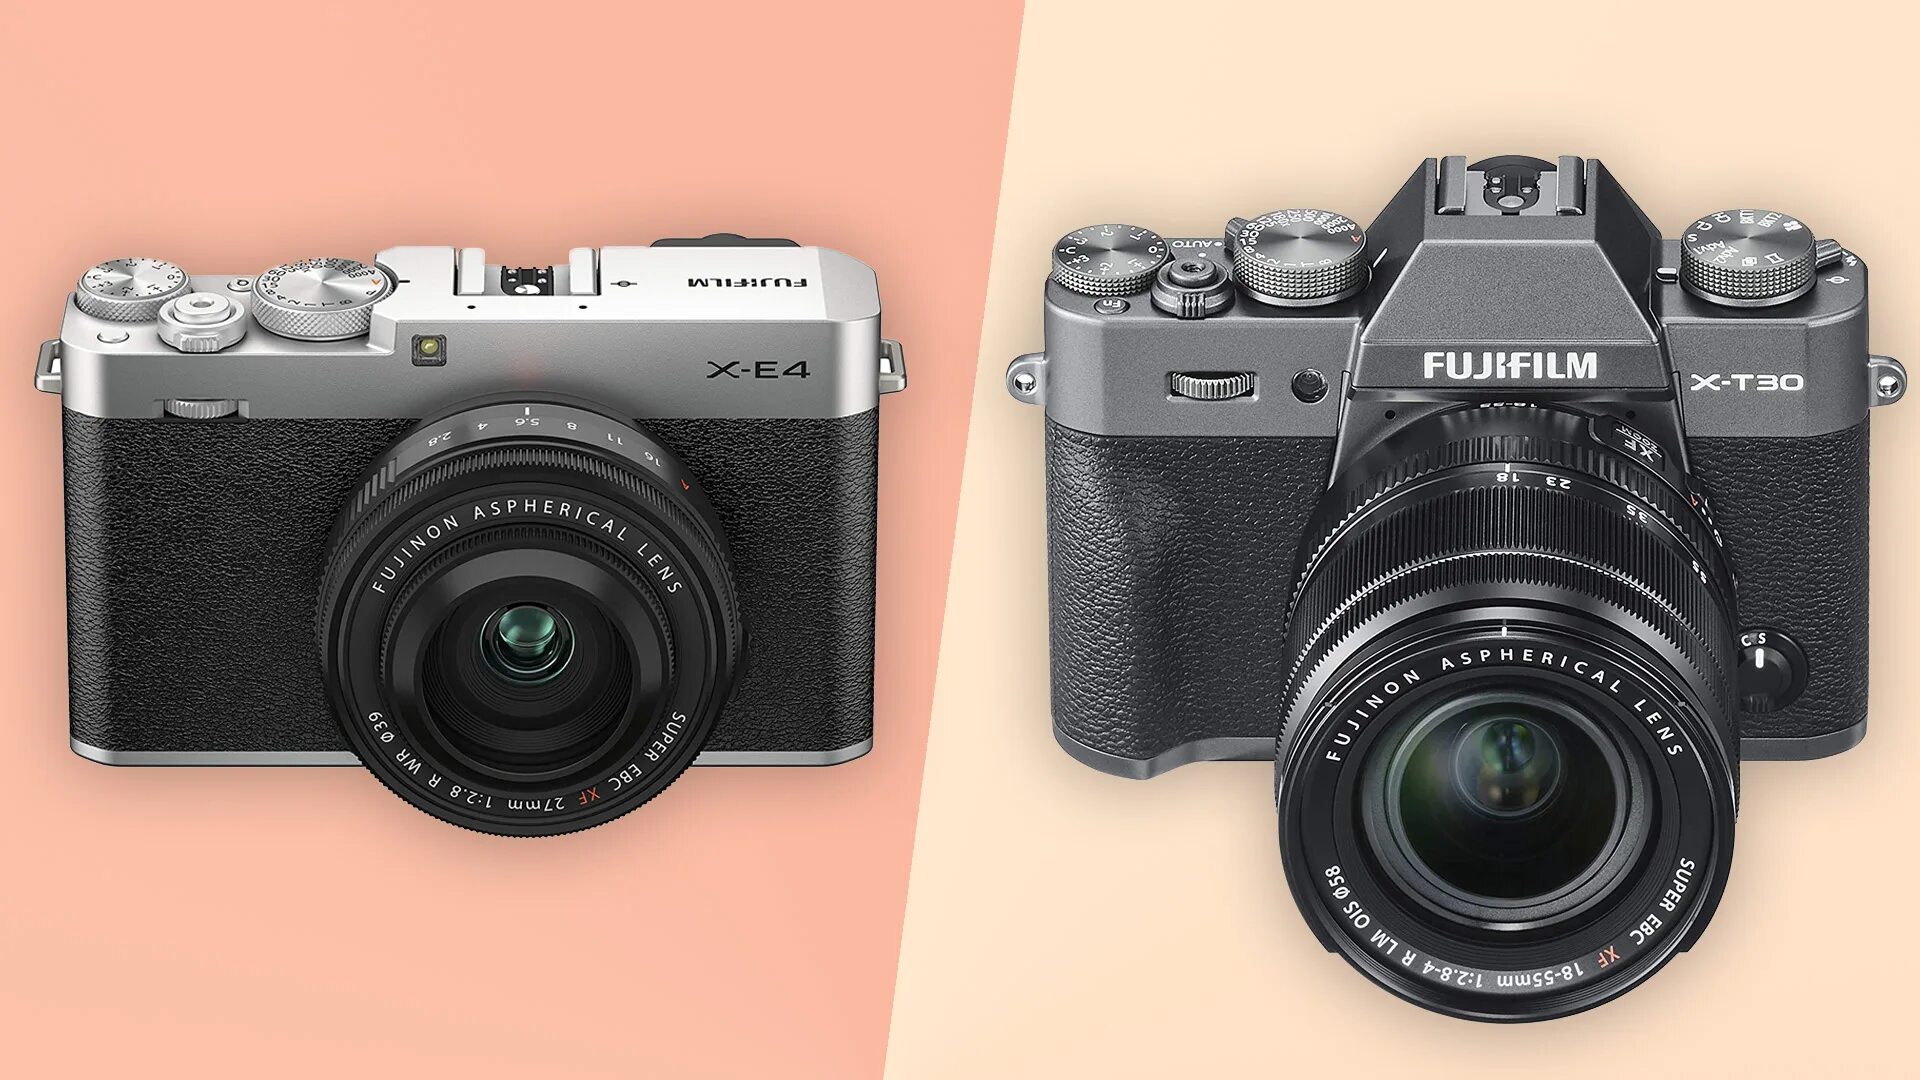 V 4 t 3 t 2. Беззеркальная камера Fujifilm x-t30. Fujifilm e4 body. Фотокамеры Fujifilm xe -4. Фотоаппарат Fujifilm x-t30.